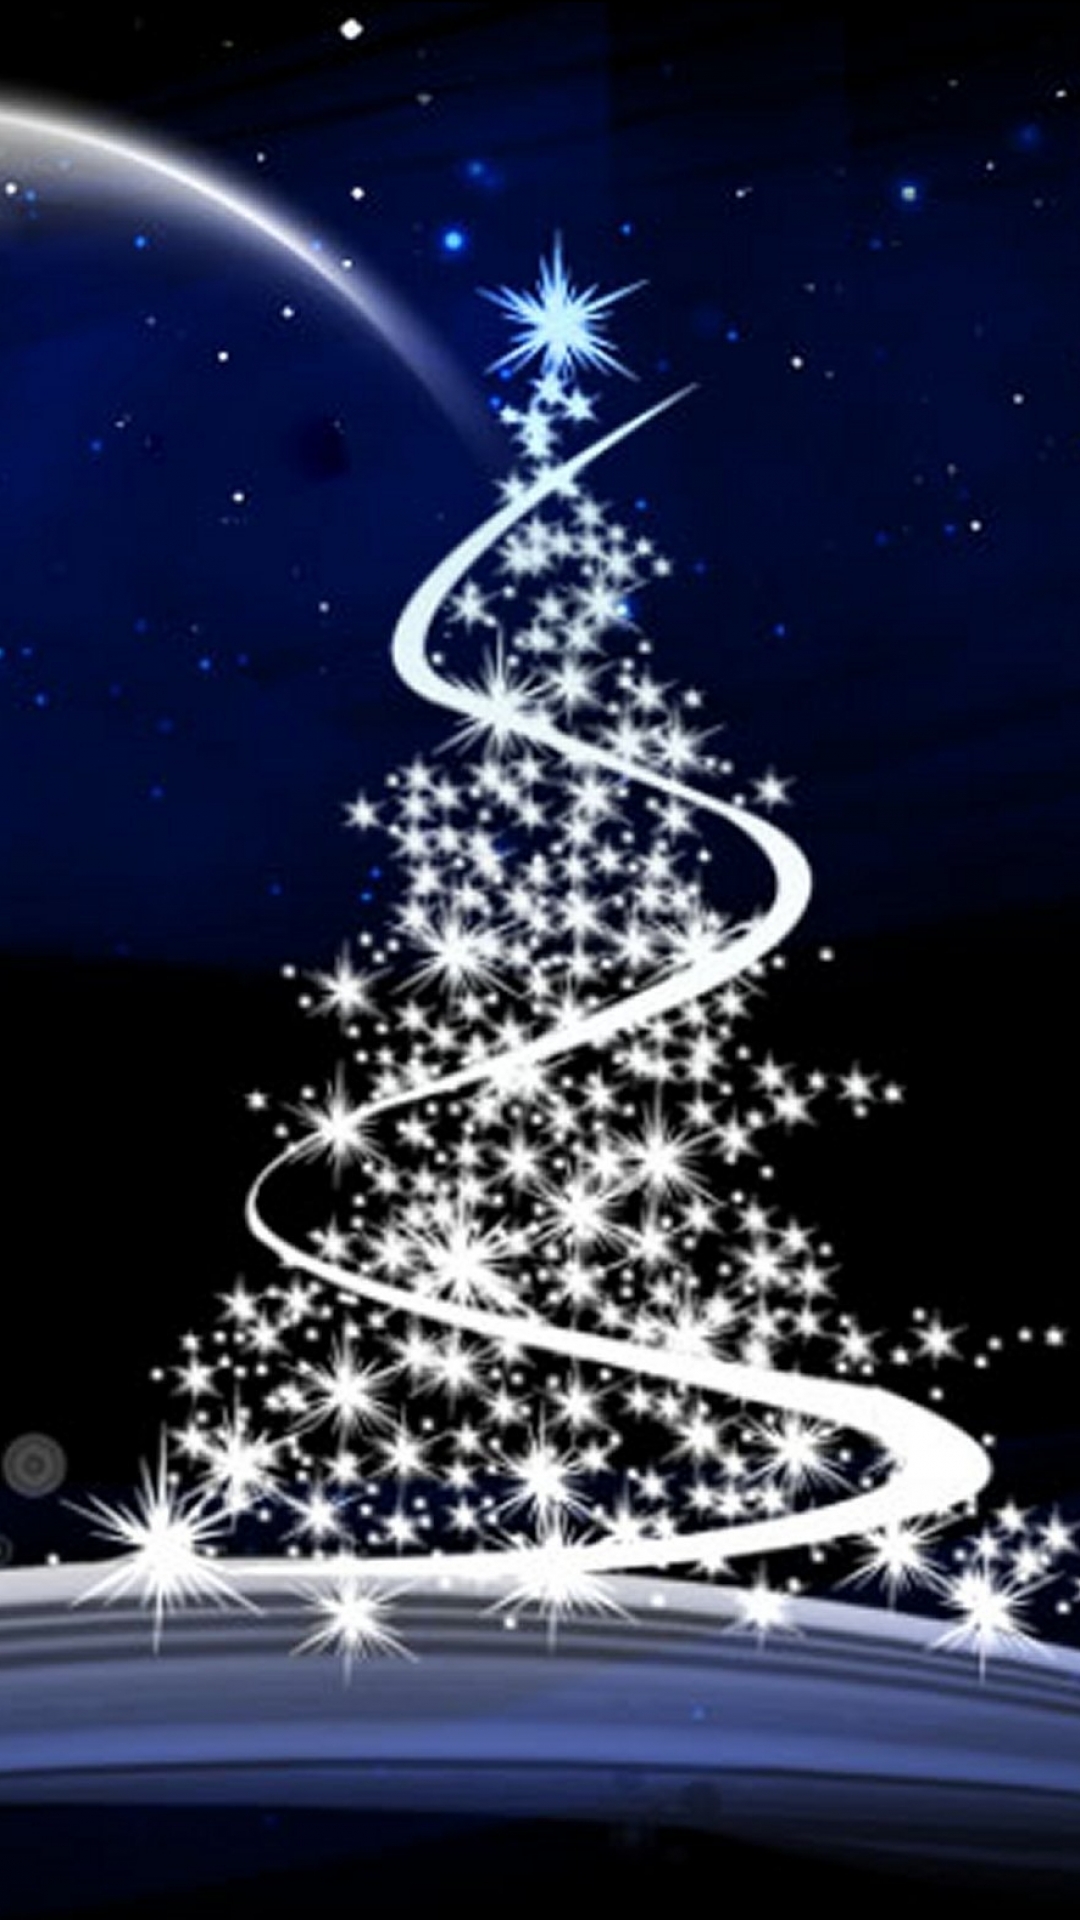 iphone handy wallpaper,weihnachtsbaum,weihnachtsdekoration,himmel,heiligabend,baum